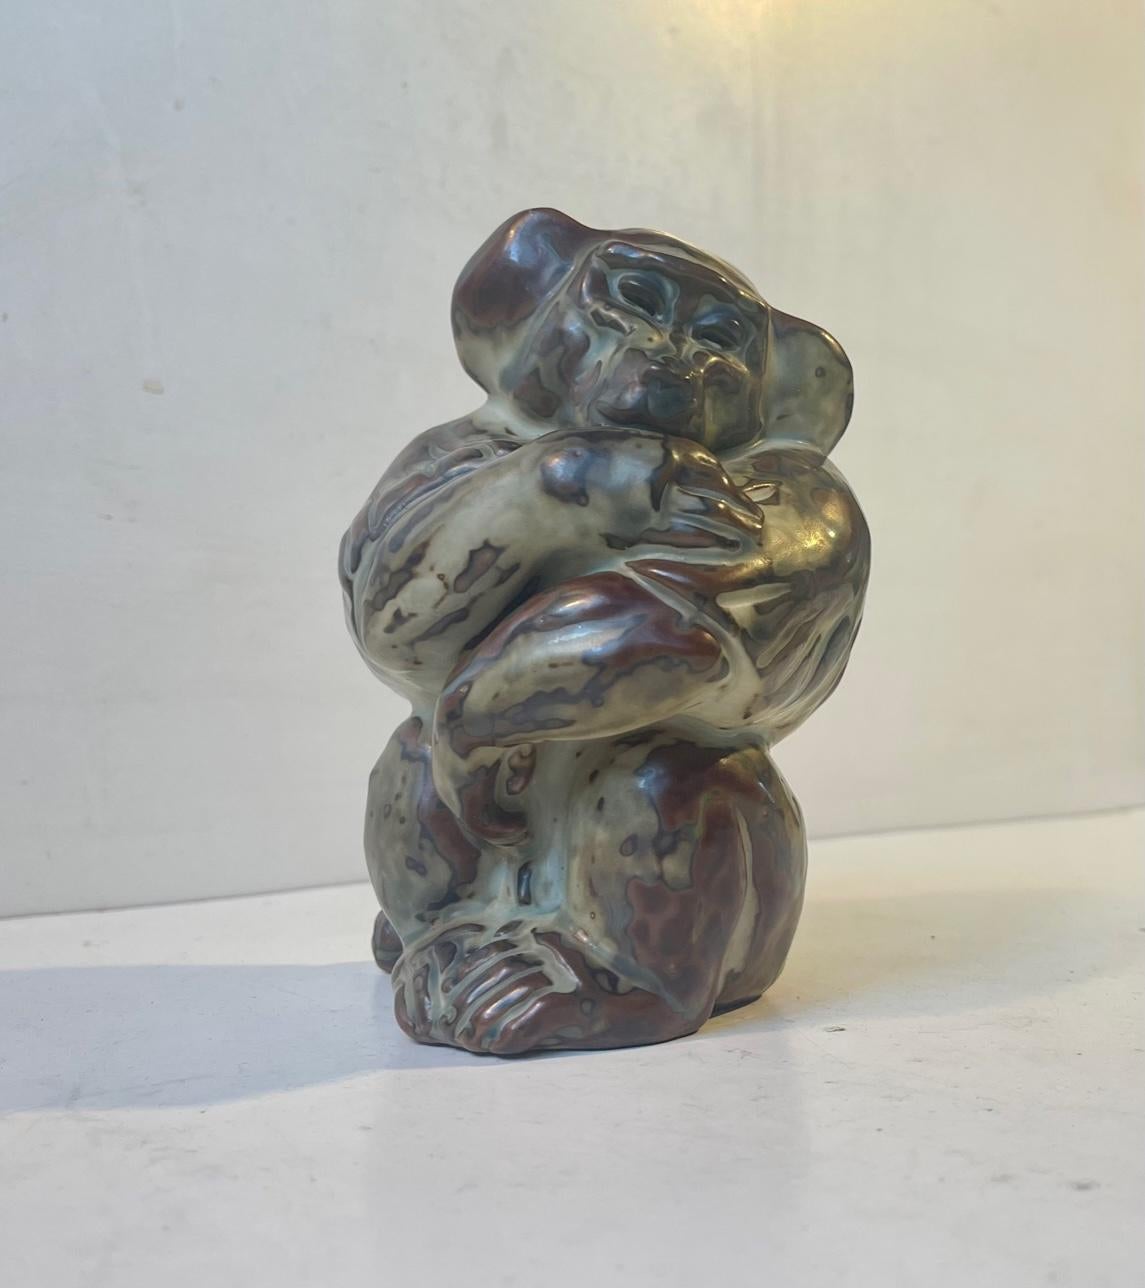 Cette série d'éléphants/mammouths, ours, singes, etc. a été conçue par le céramiste danois Knud Kyhn (KK) en 1929-1936. Largement inspirées par les glaçures chantantes appliquées dans les créations d'Axel Salto et de Bode Willumsen, ces figurines